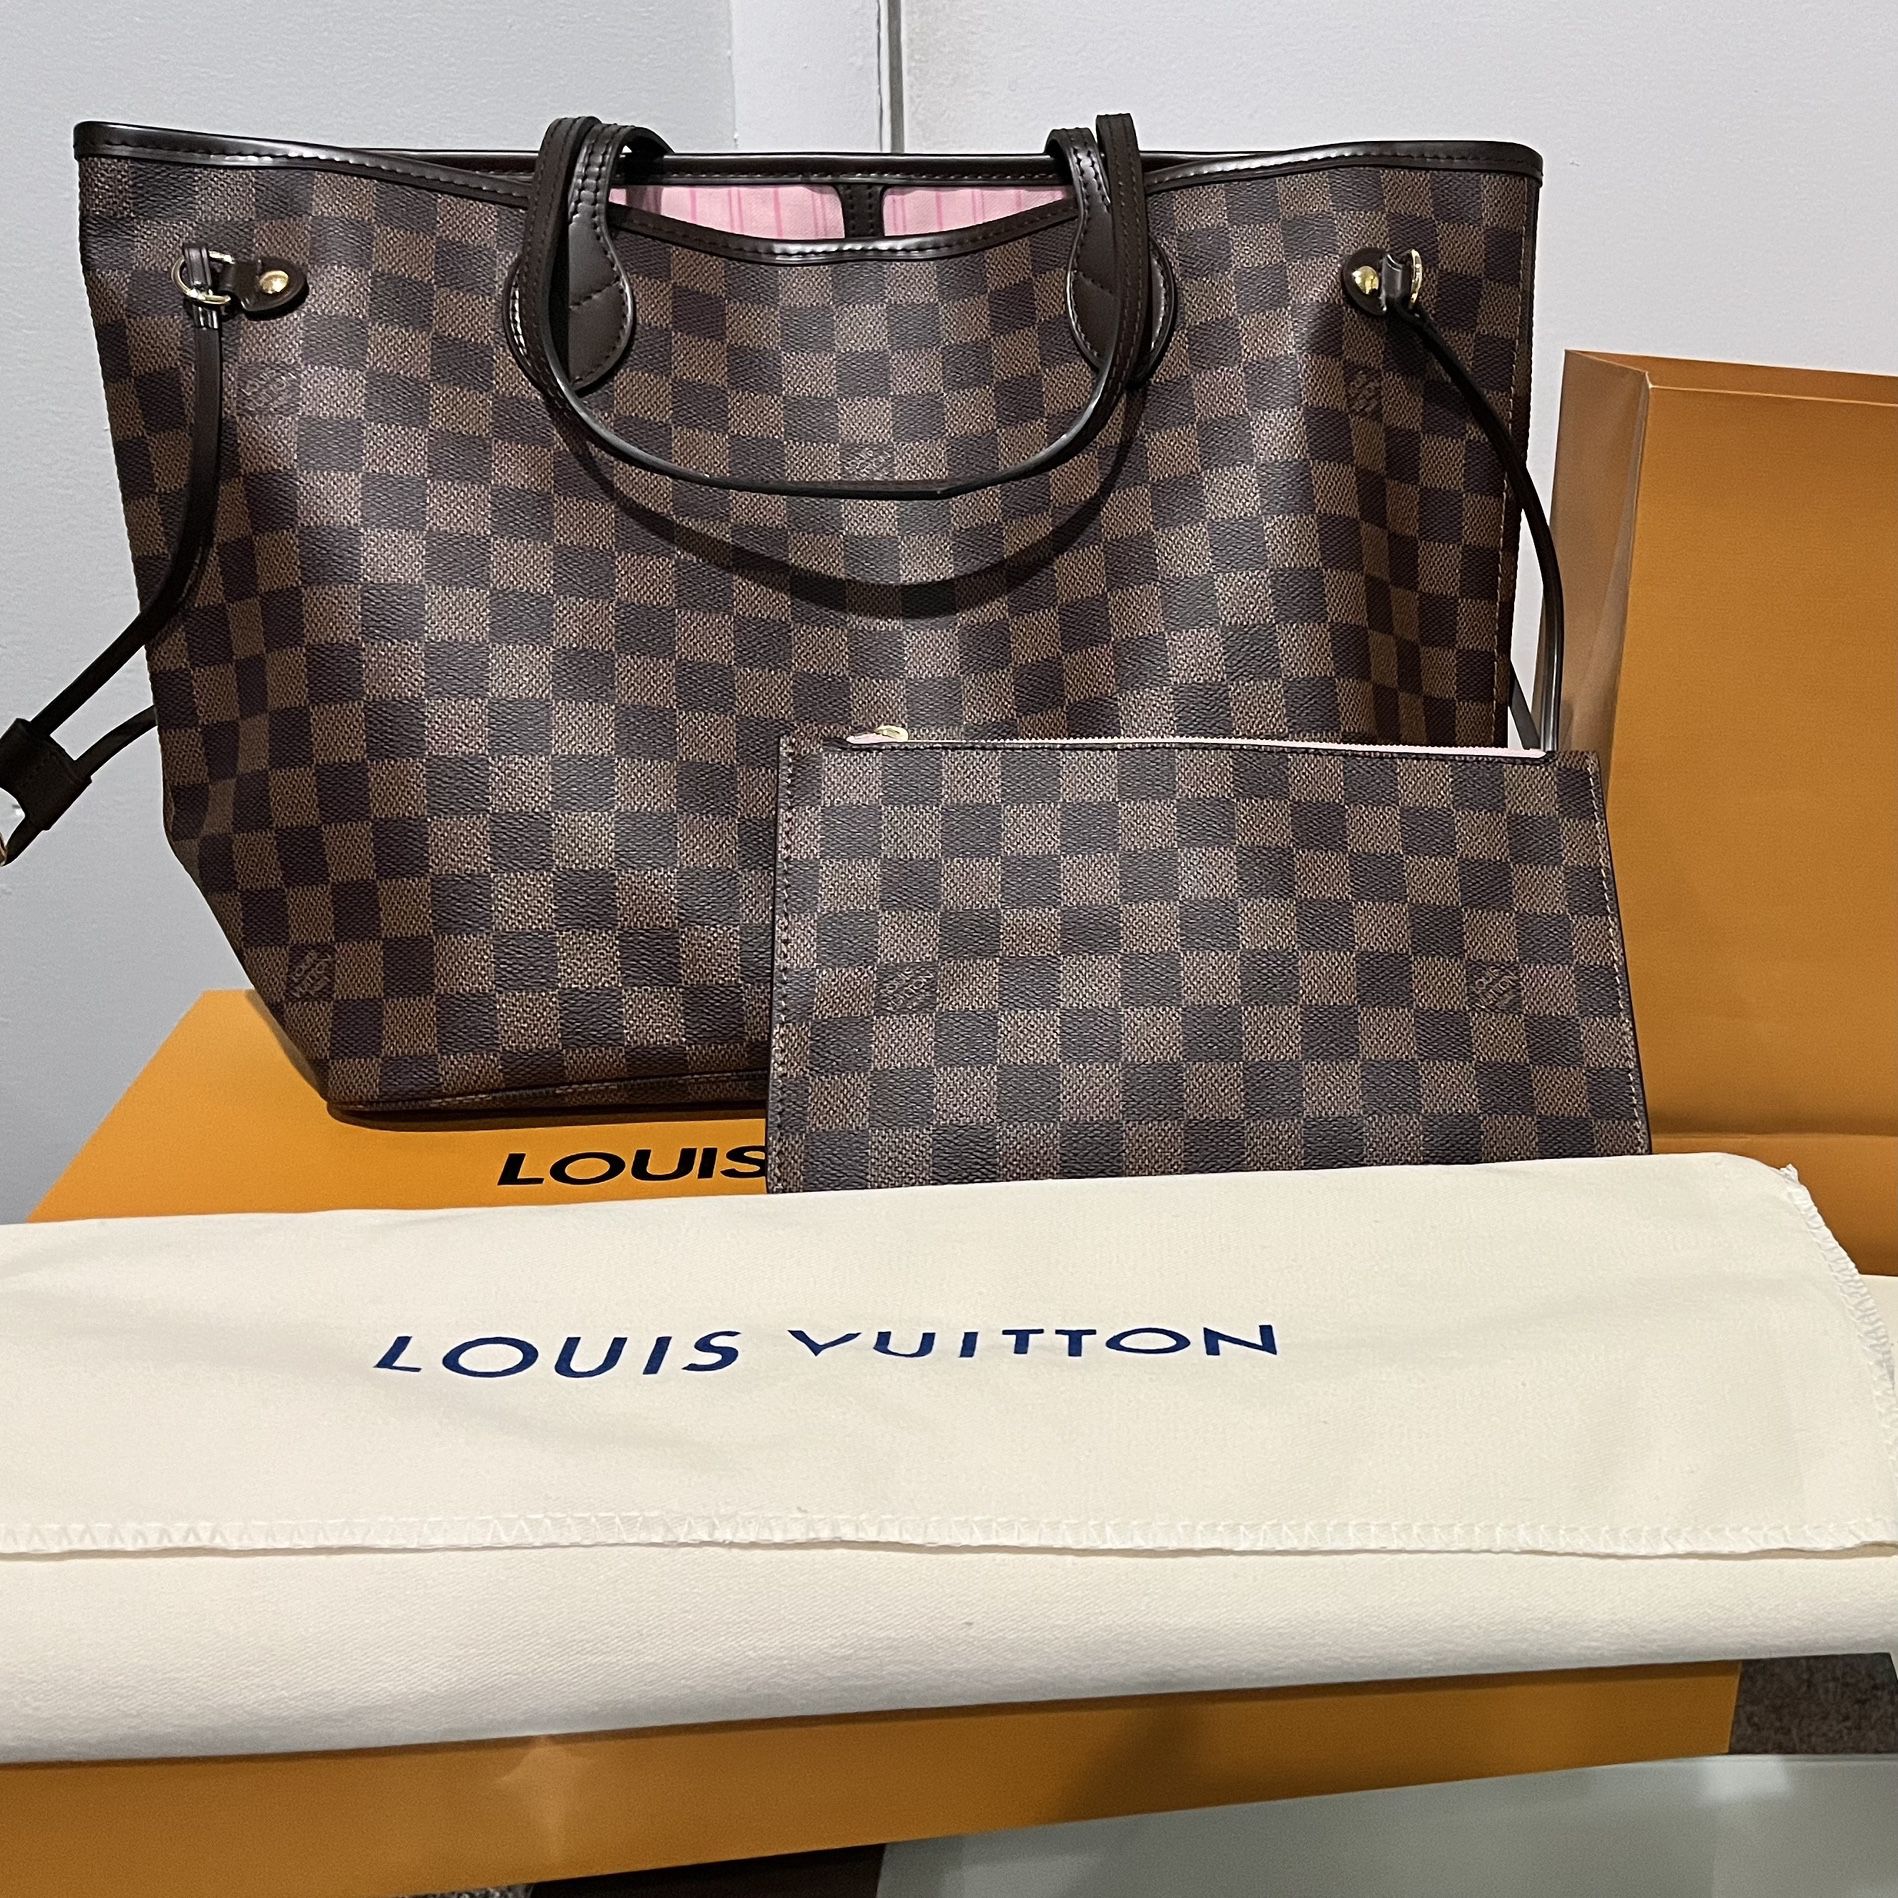 REDUCED* Louis Vuitton Rivoli MM in Damier Ebene for Sale in Dearborn, MI -  OfferUp